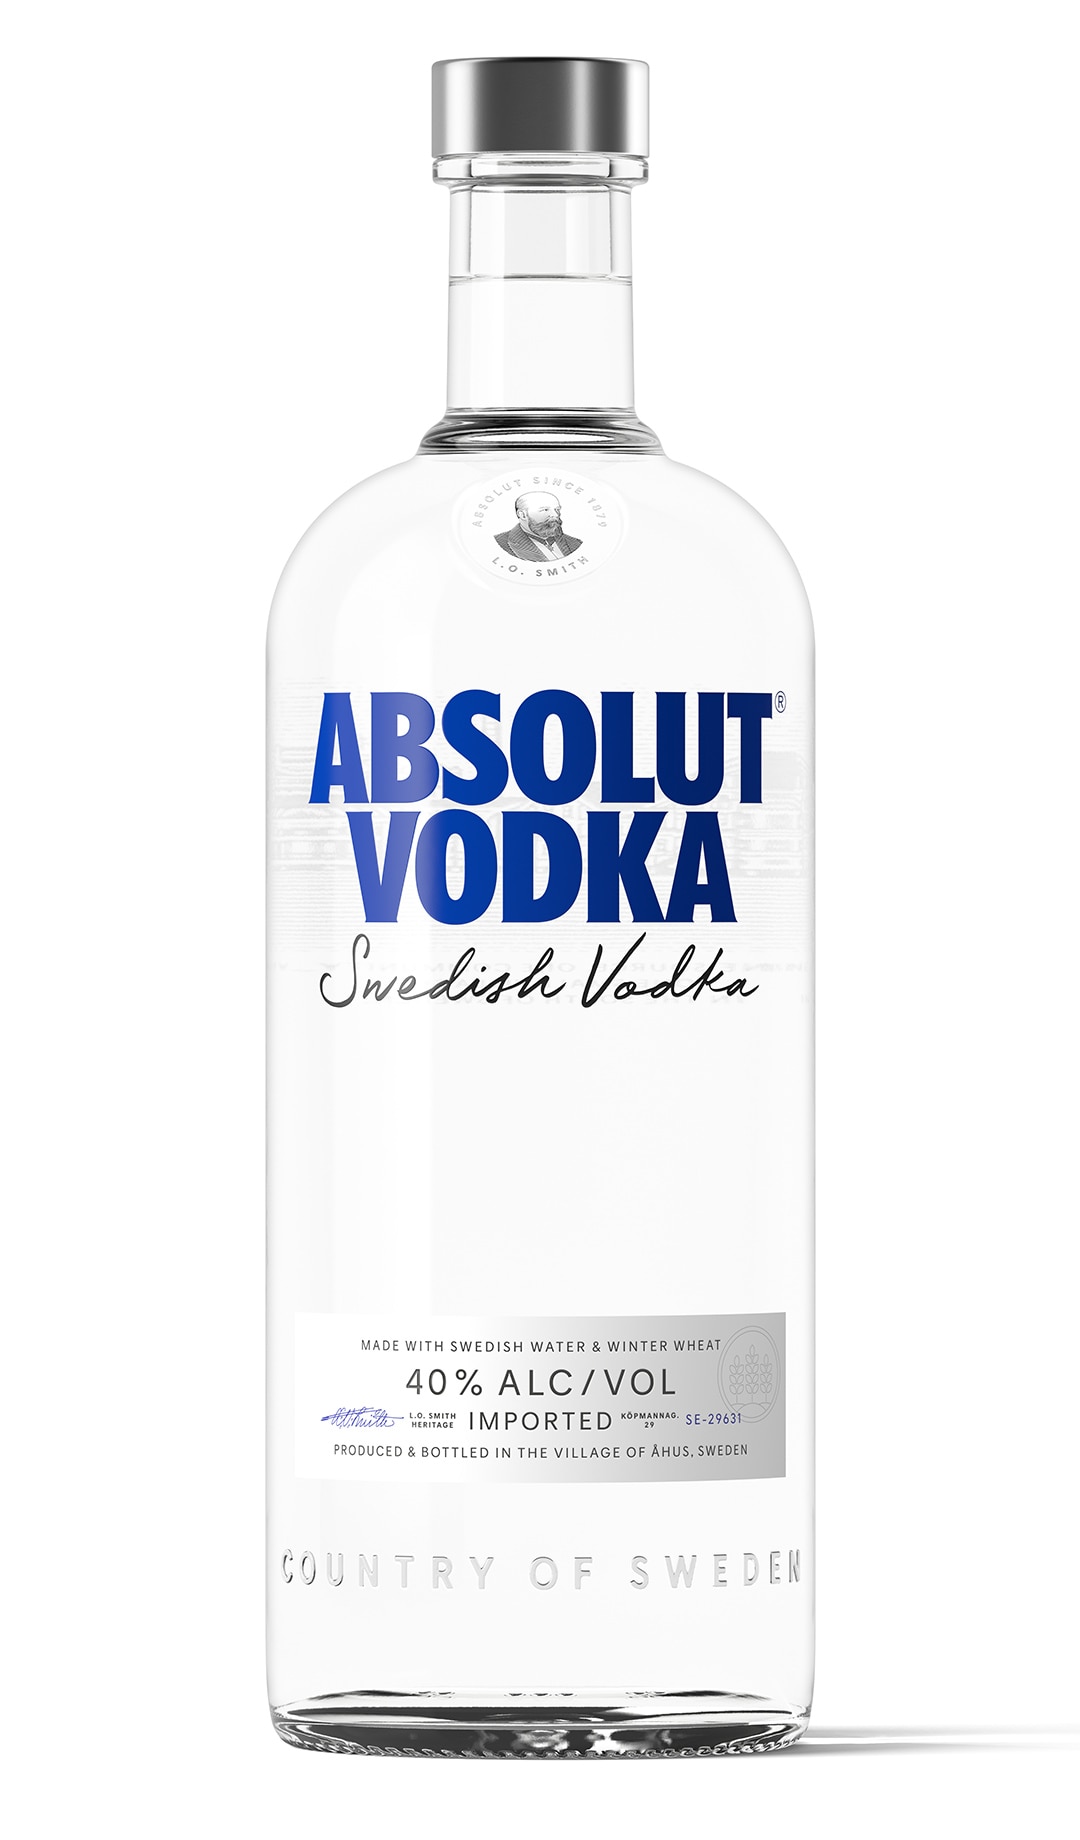 Absolut Vodka 3,0L (40% Vol.) - Absolut - Vodka